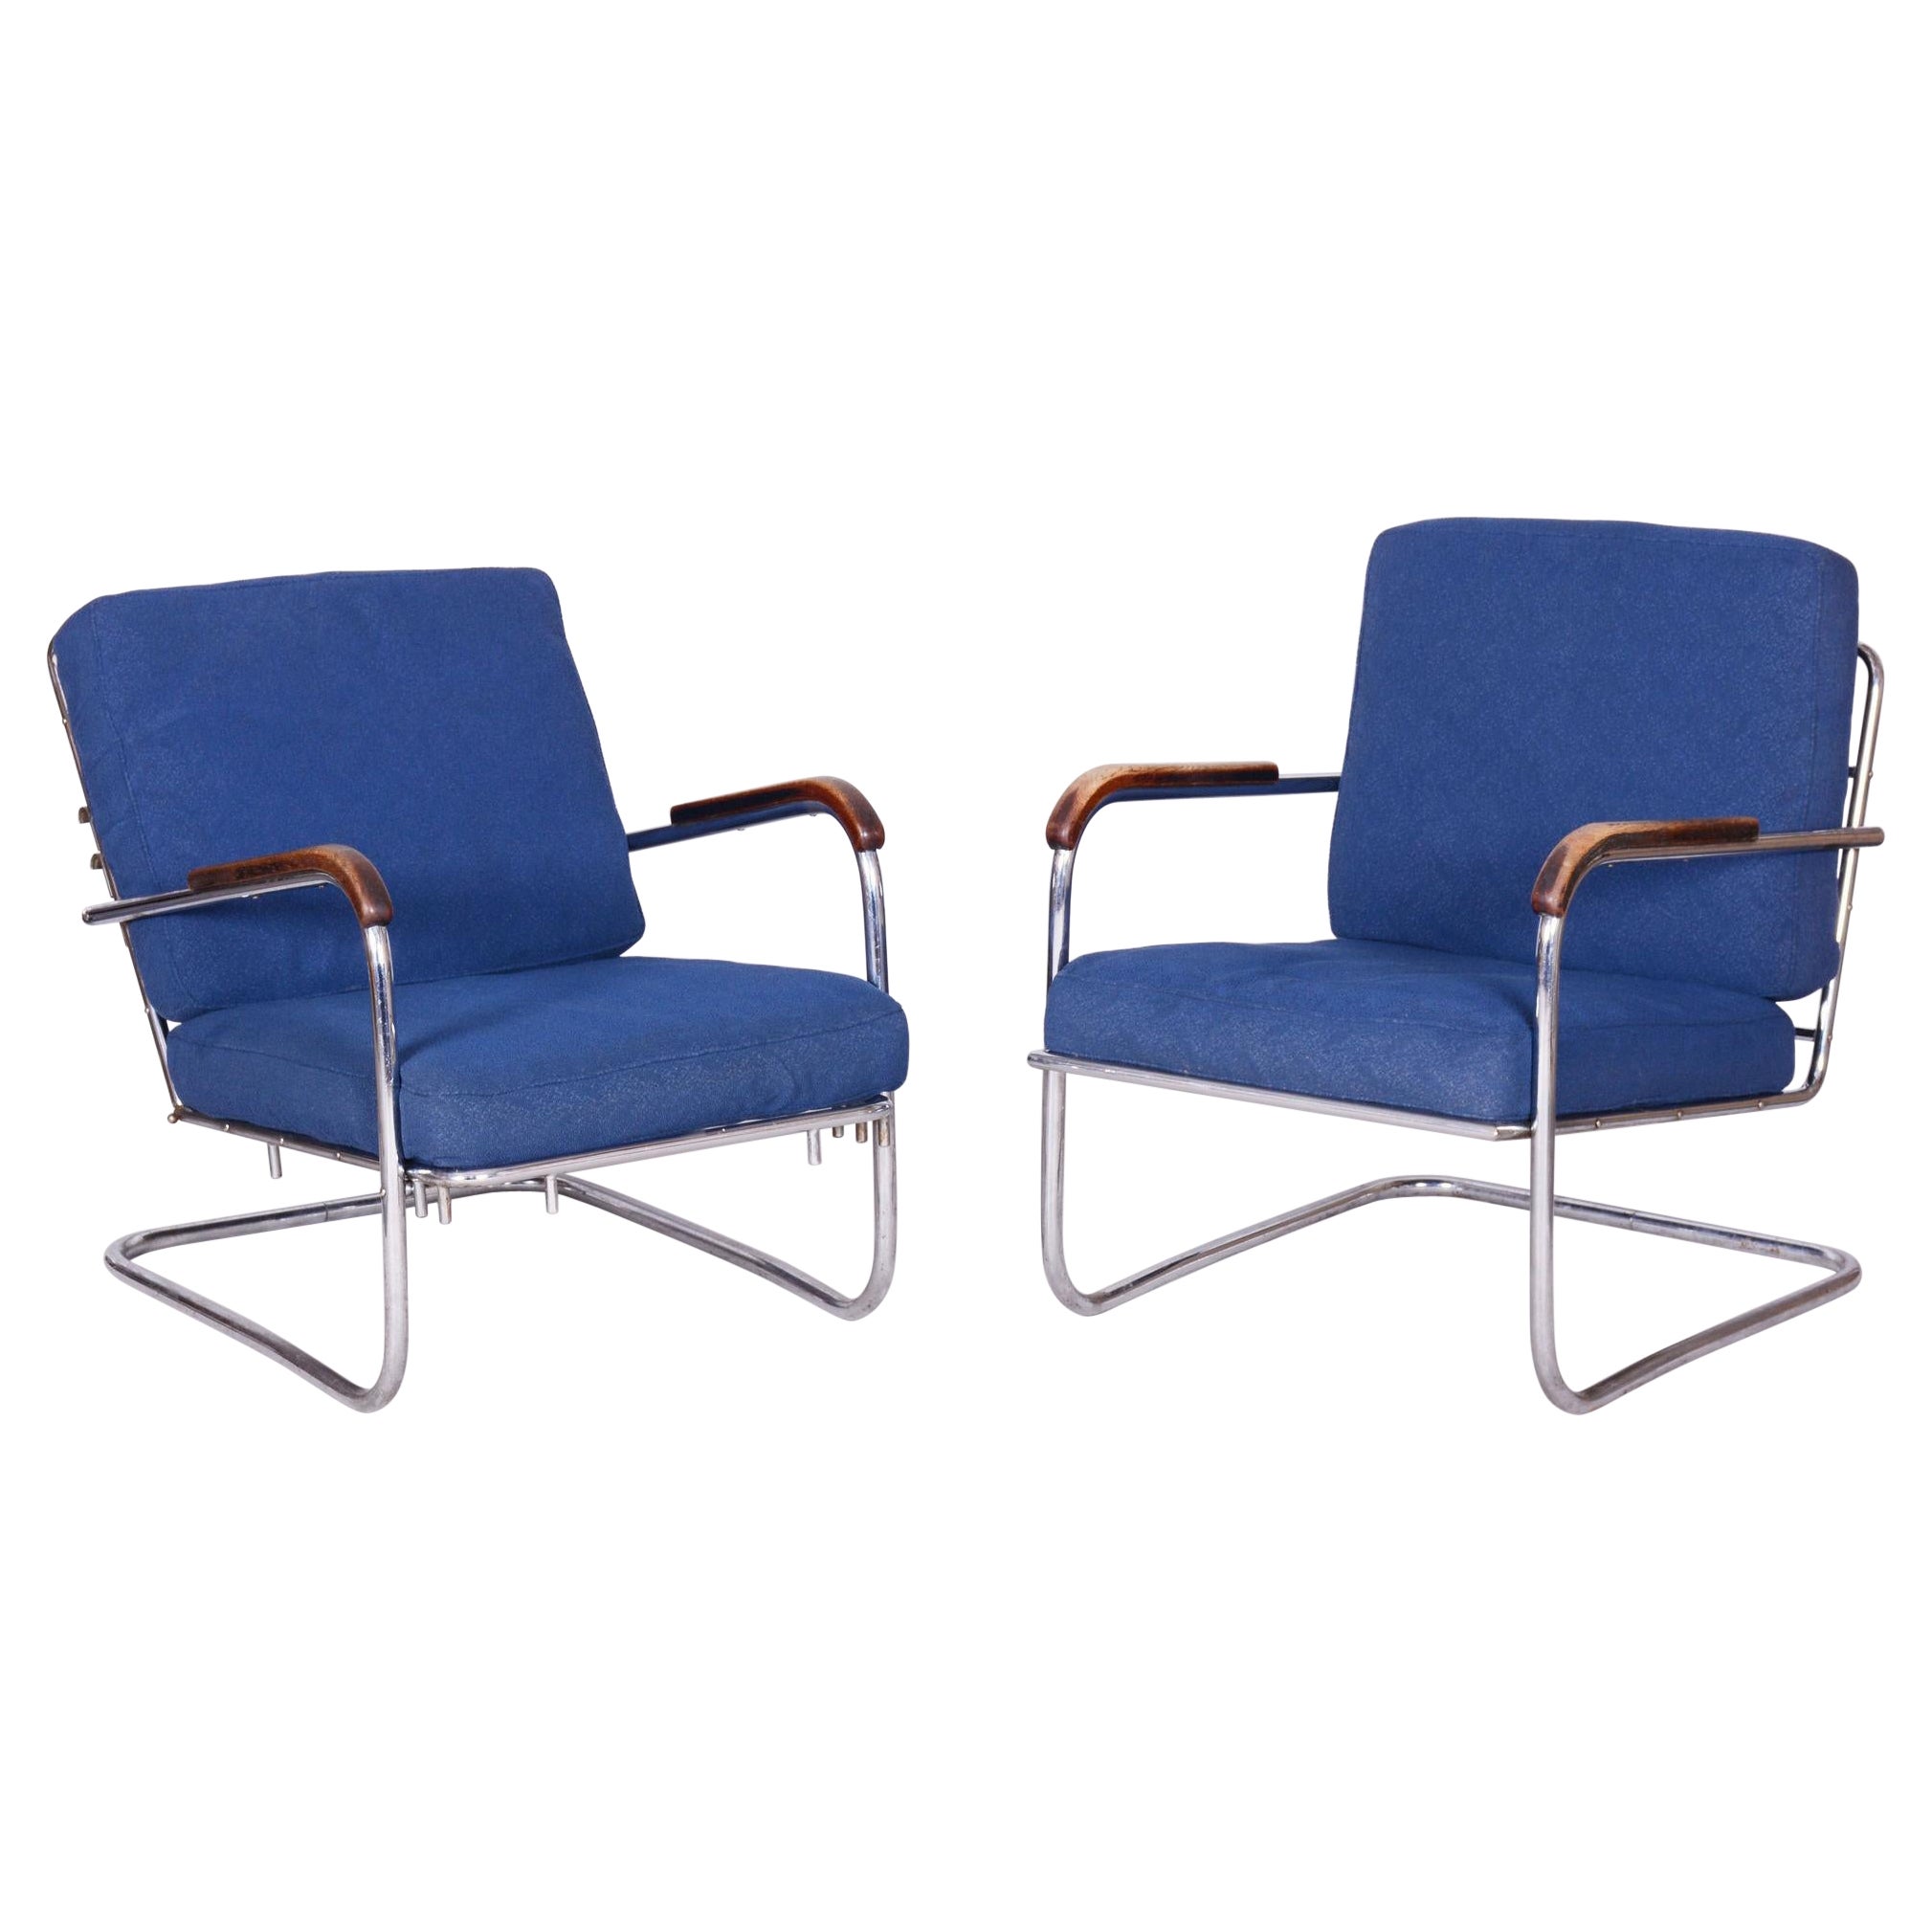 Paire de fauteuils Bauhaus d'origine, acier chromé, Suisse, années 1930